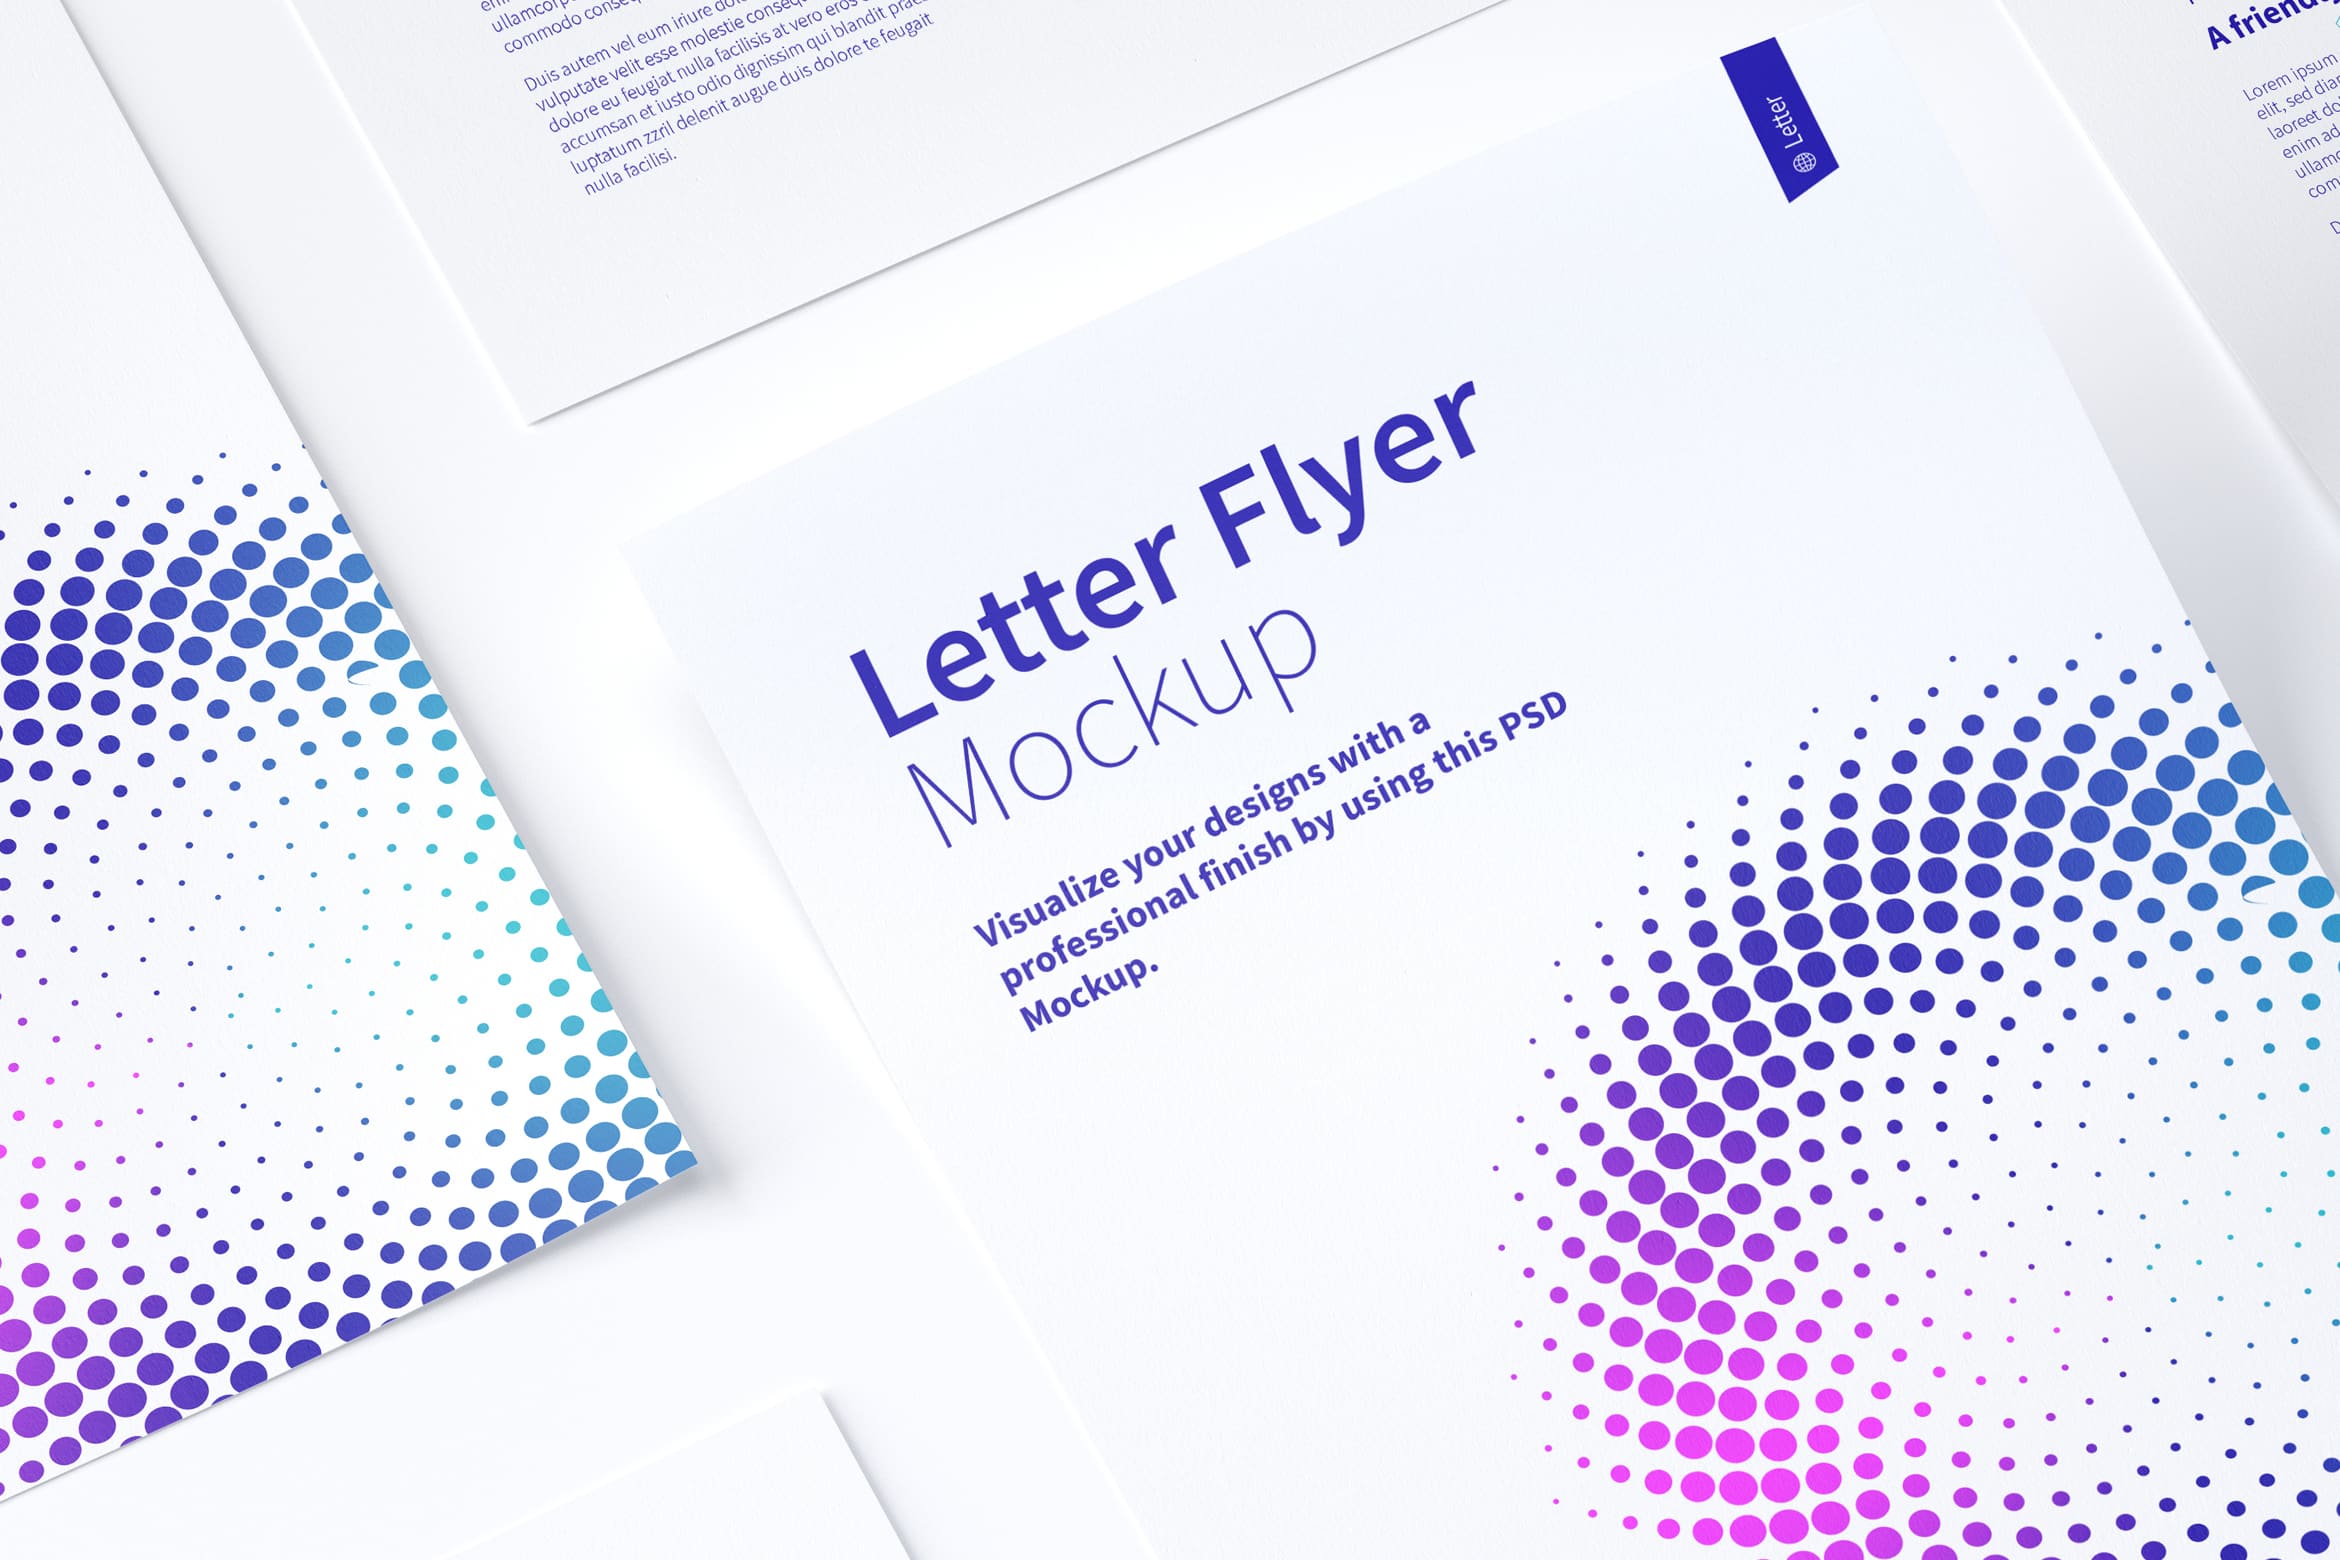 信纸规格传单设计等距样机模板02 Letter Flyer Mockup 02插图(2)